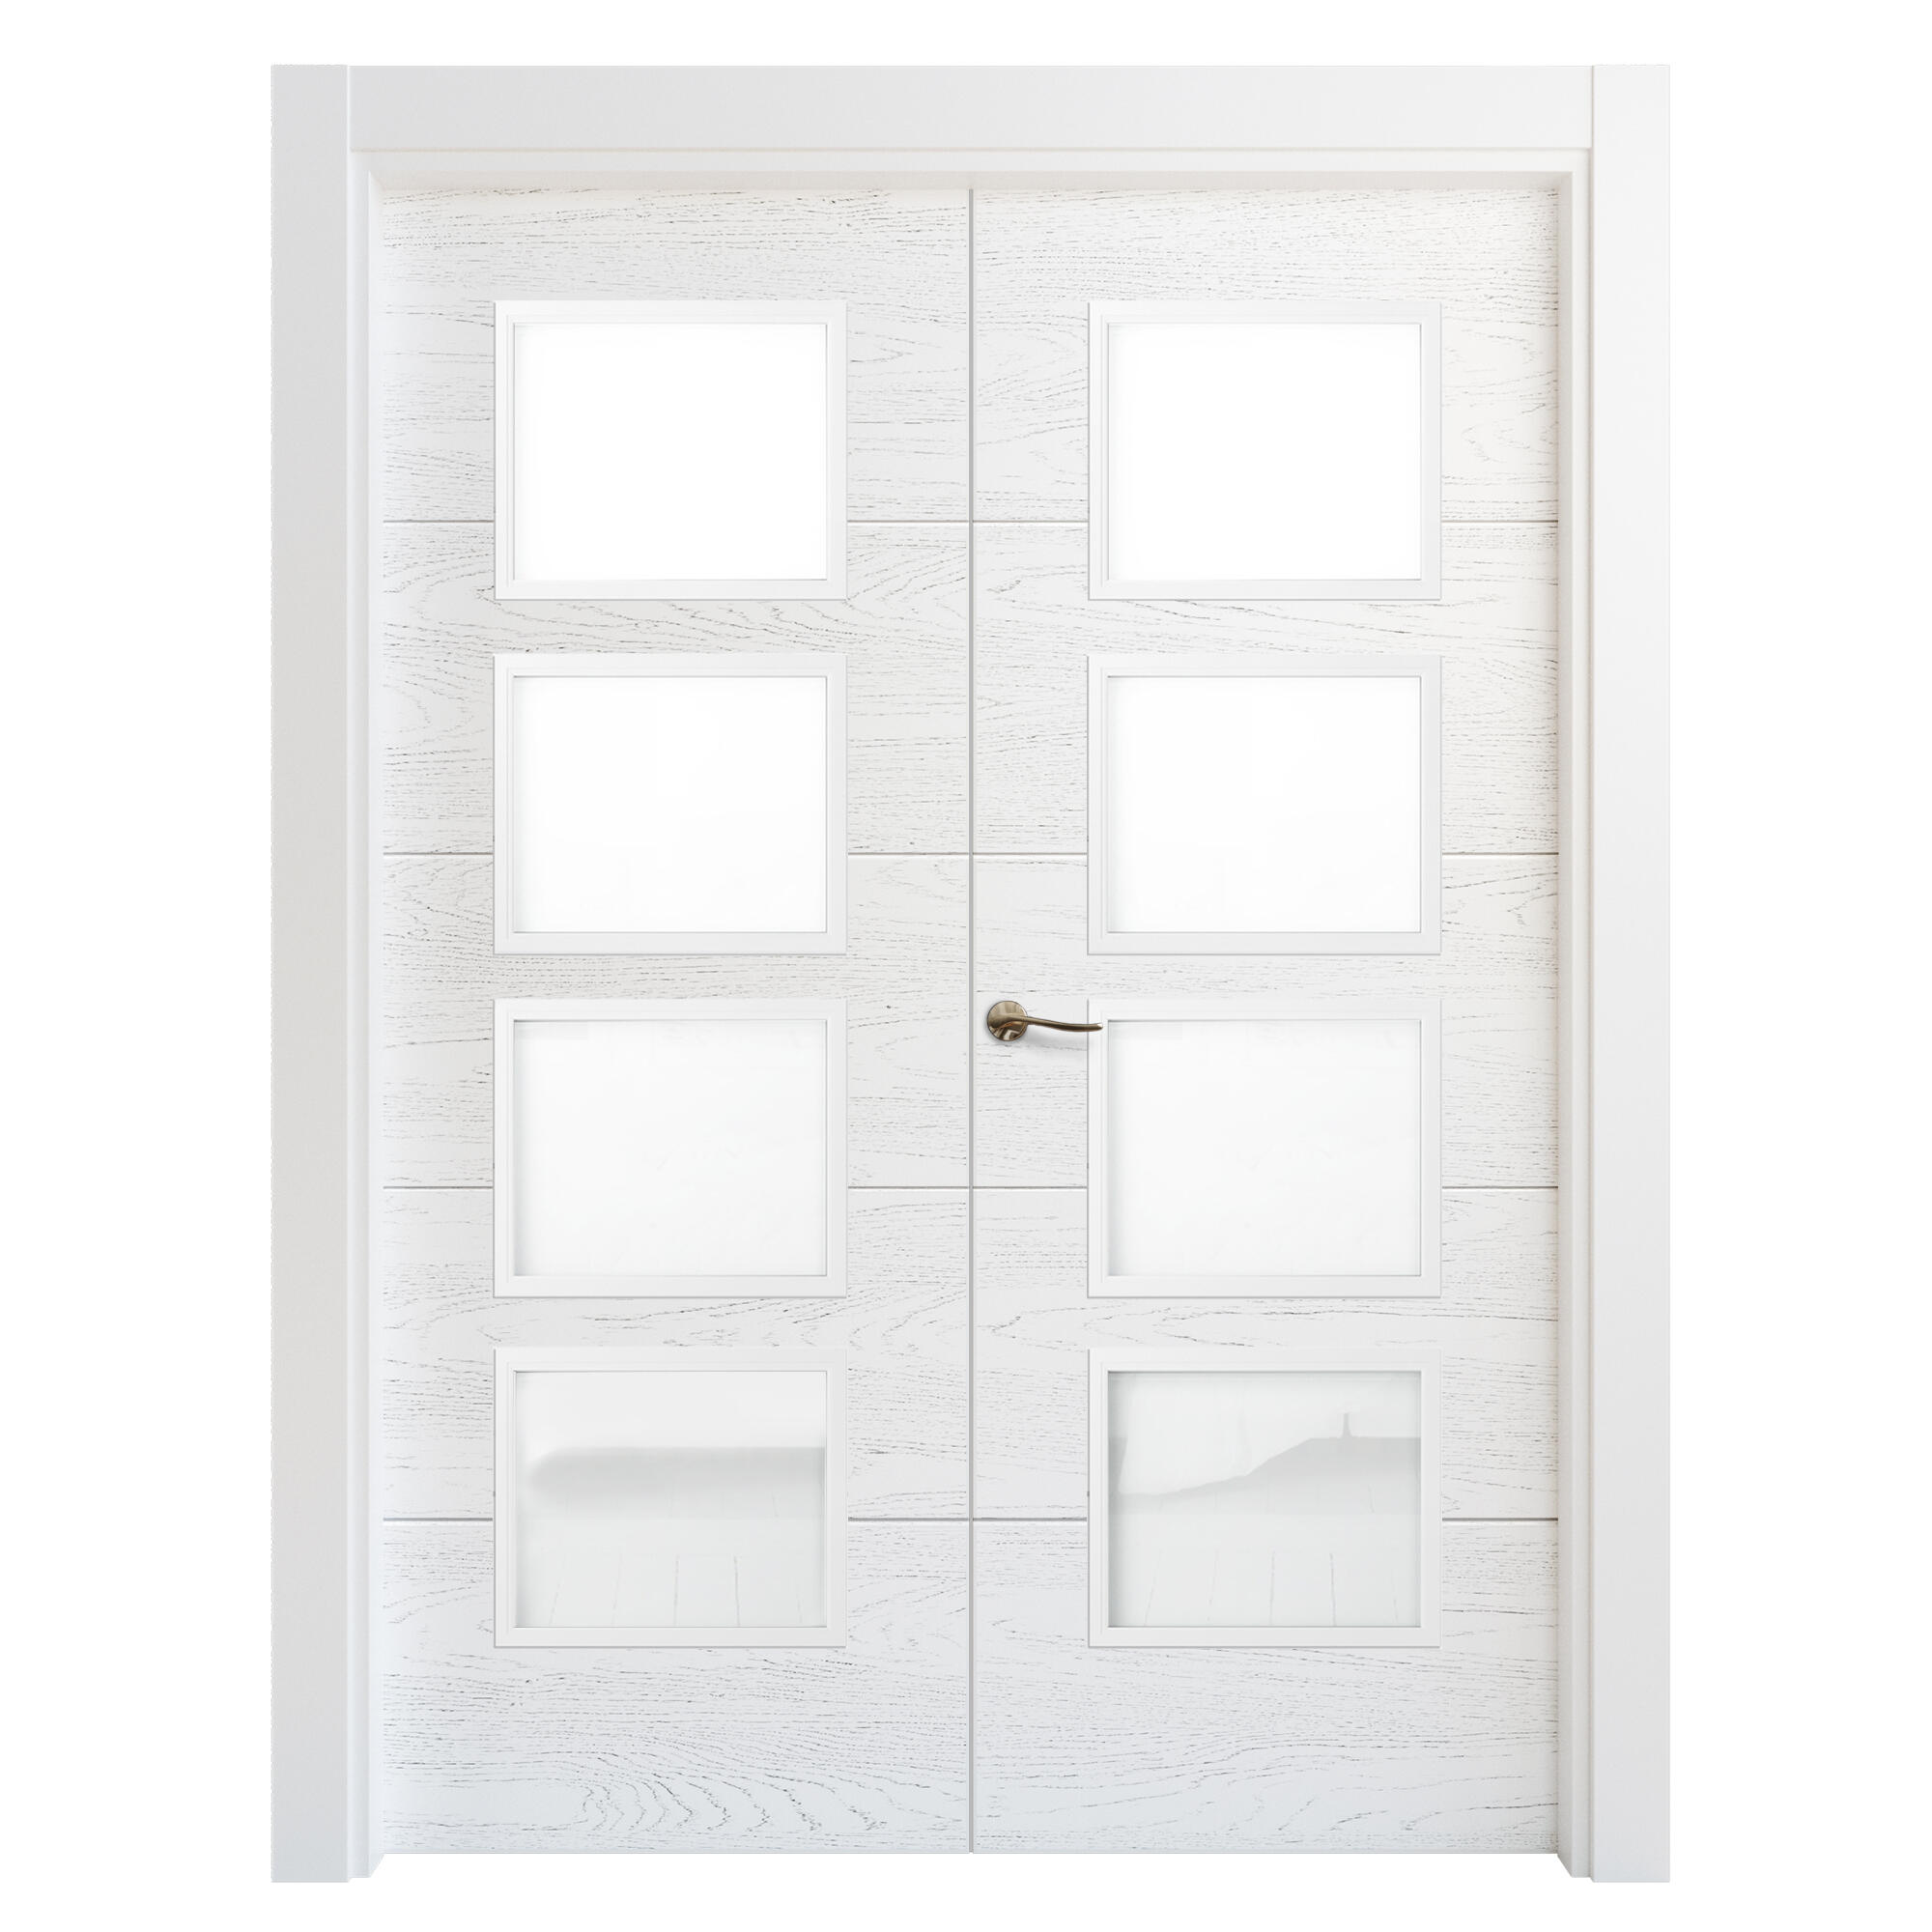 Puerta doble acristalada lucerna premium blanca i 7x115 cm